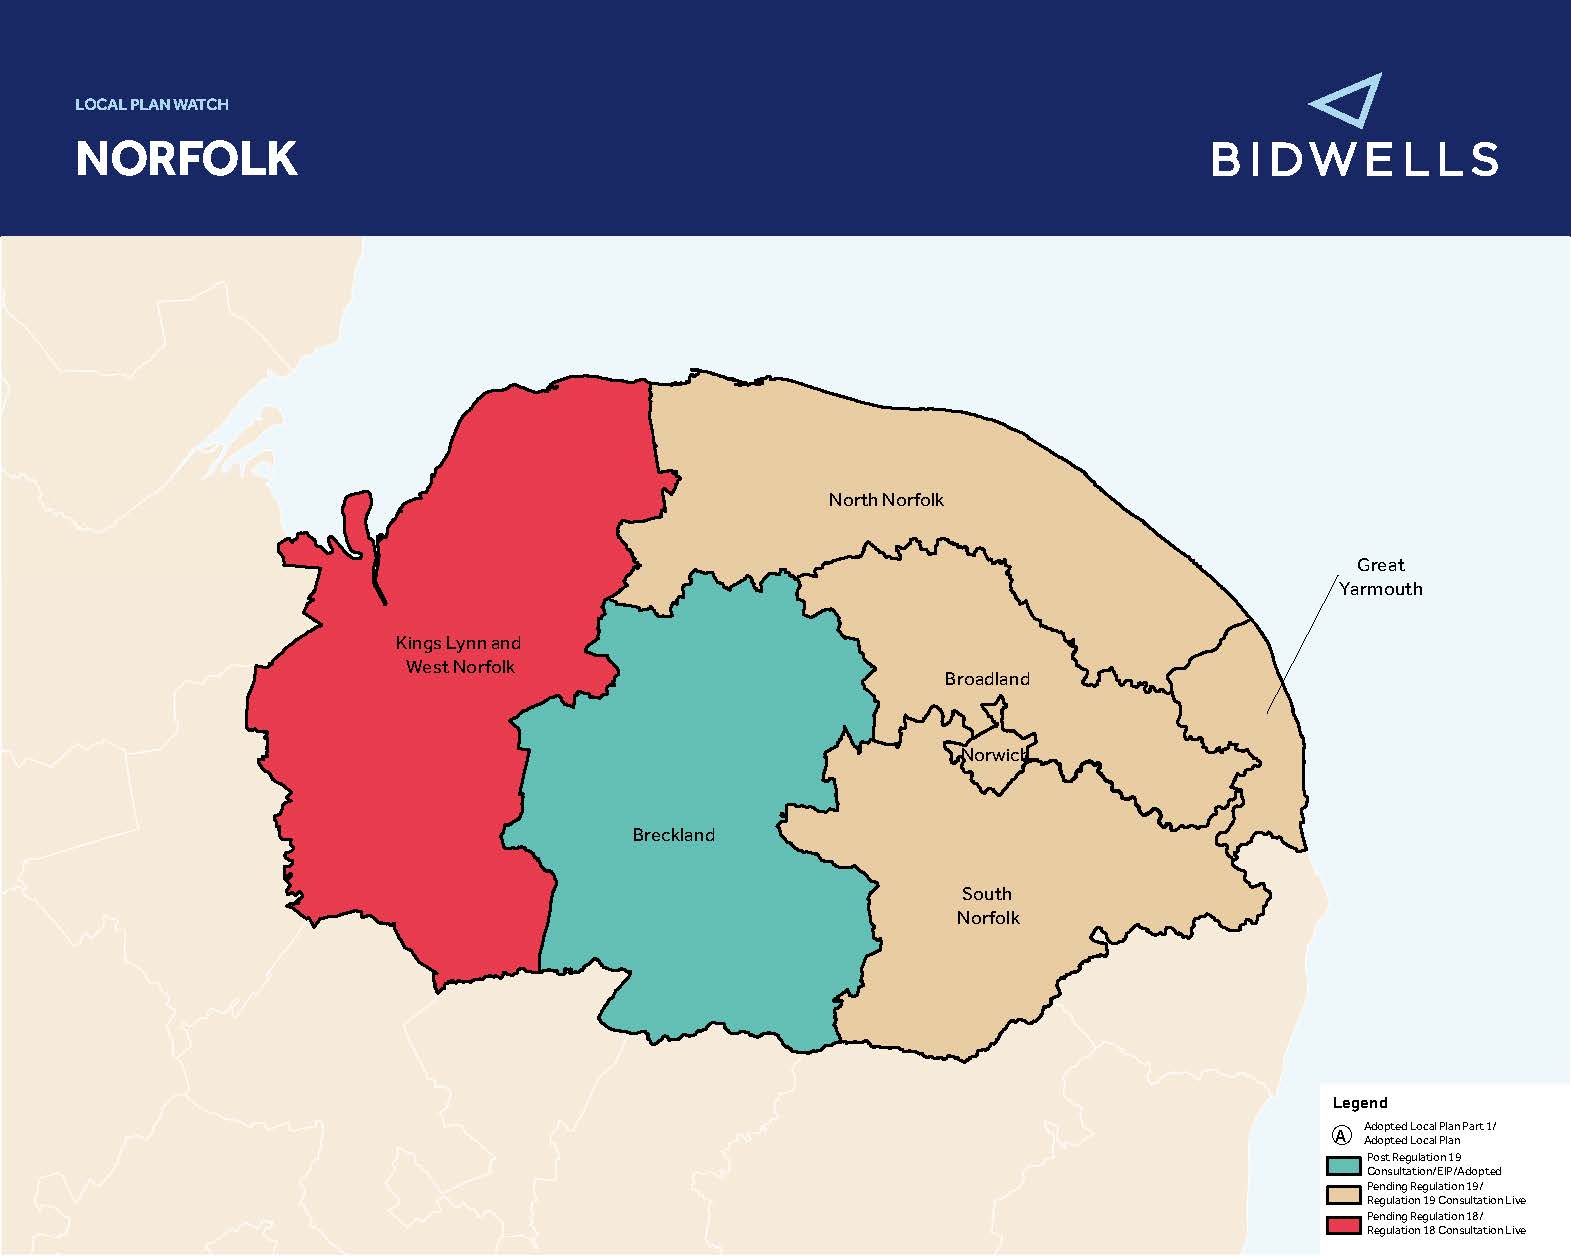 Norfolk Local Plan Watch- Spring 2020